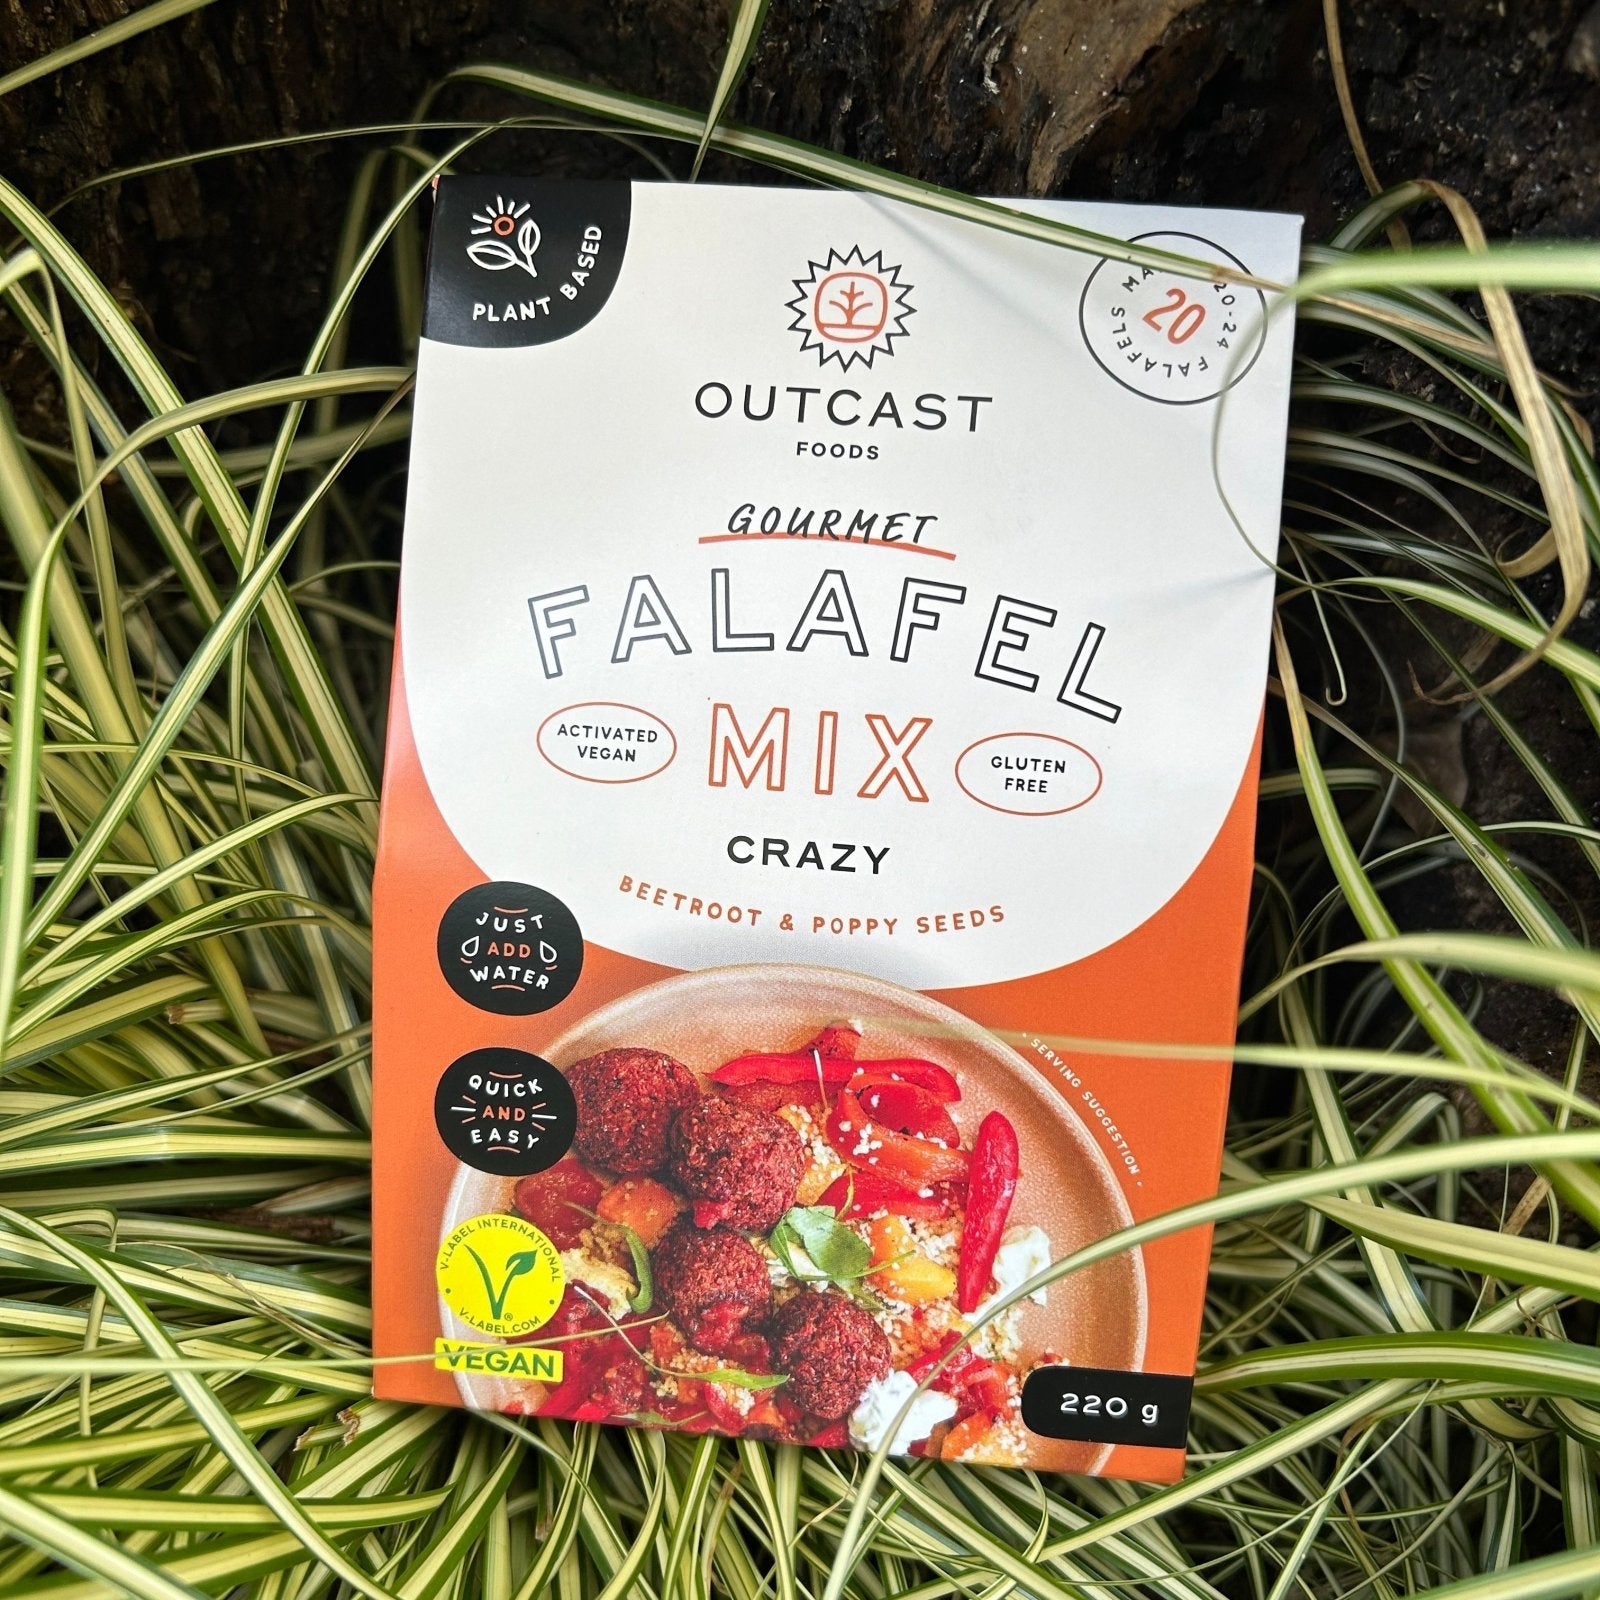 Outcast Crazy Falafel Mix (220g) - The Deli